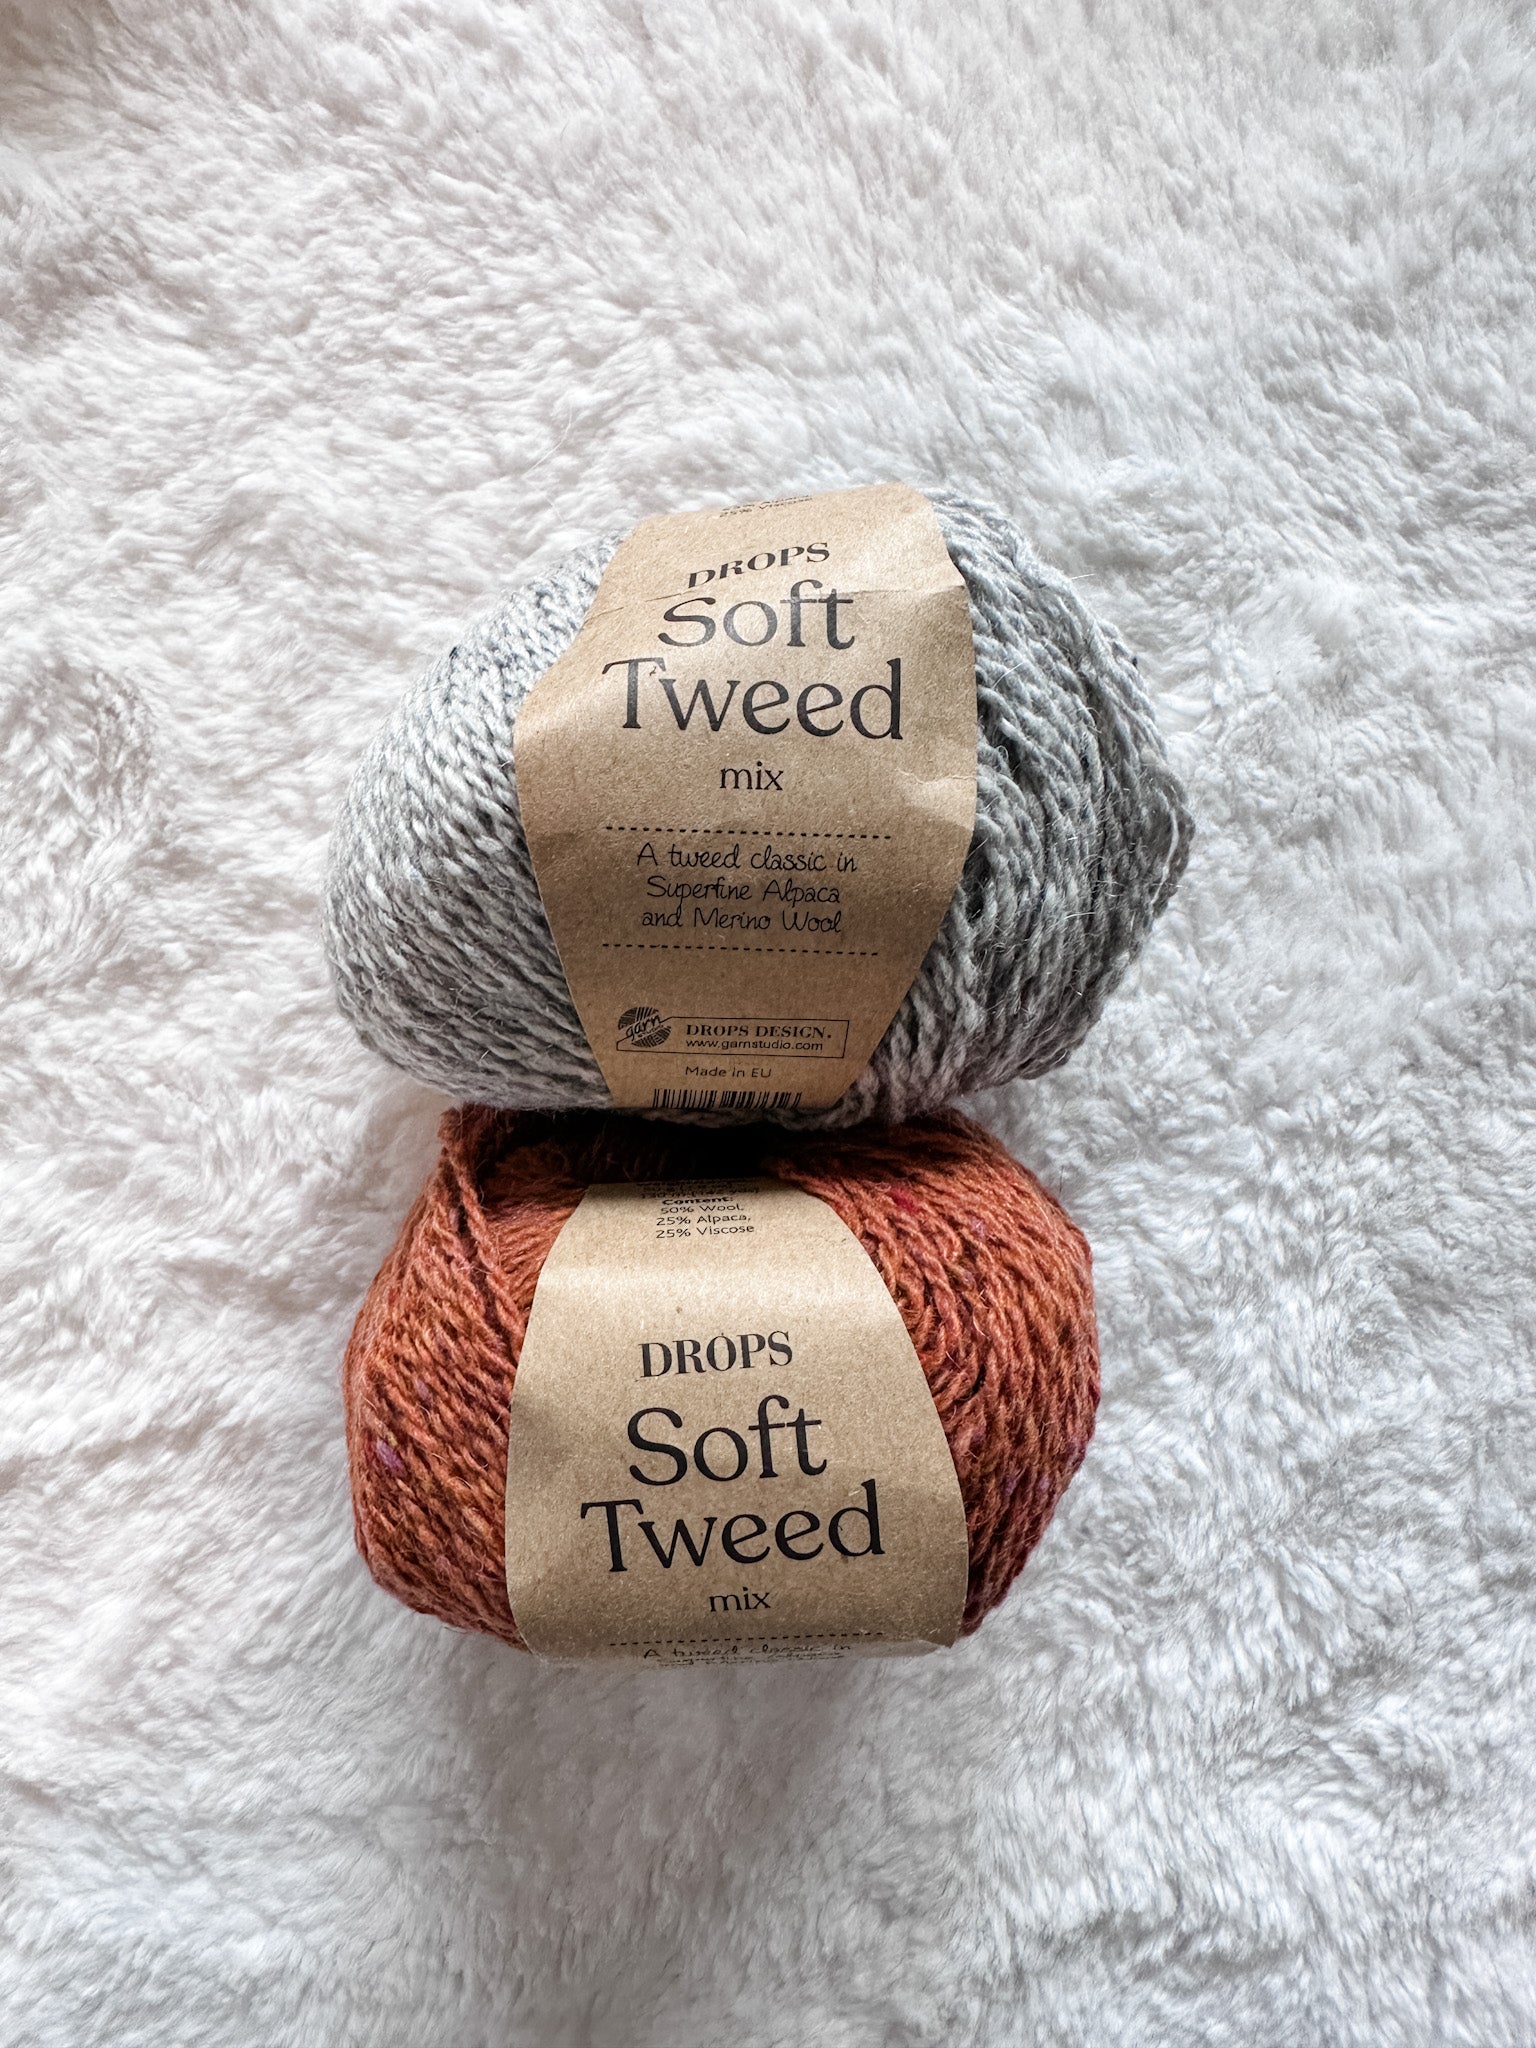 Lot 83: DROPS Soft Tweed